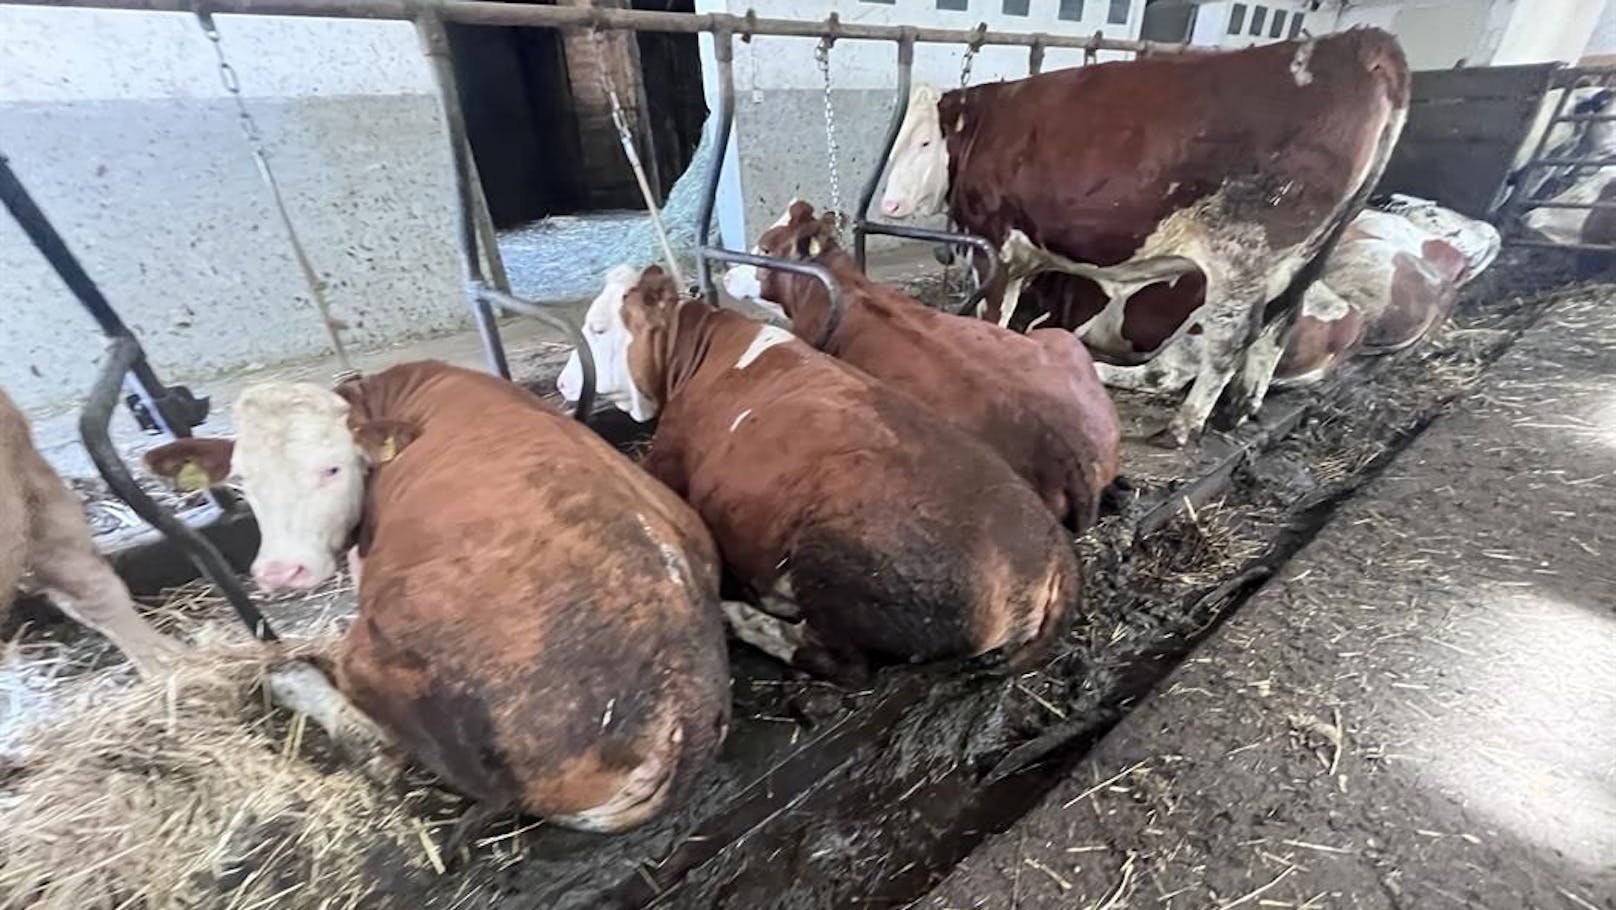 Wenig Platz, Kühe in Ketten – schlimme Zustände auf Hof